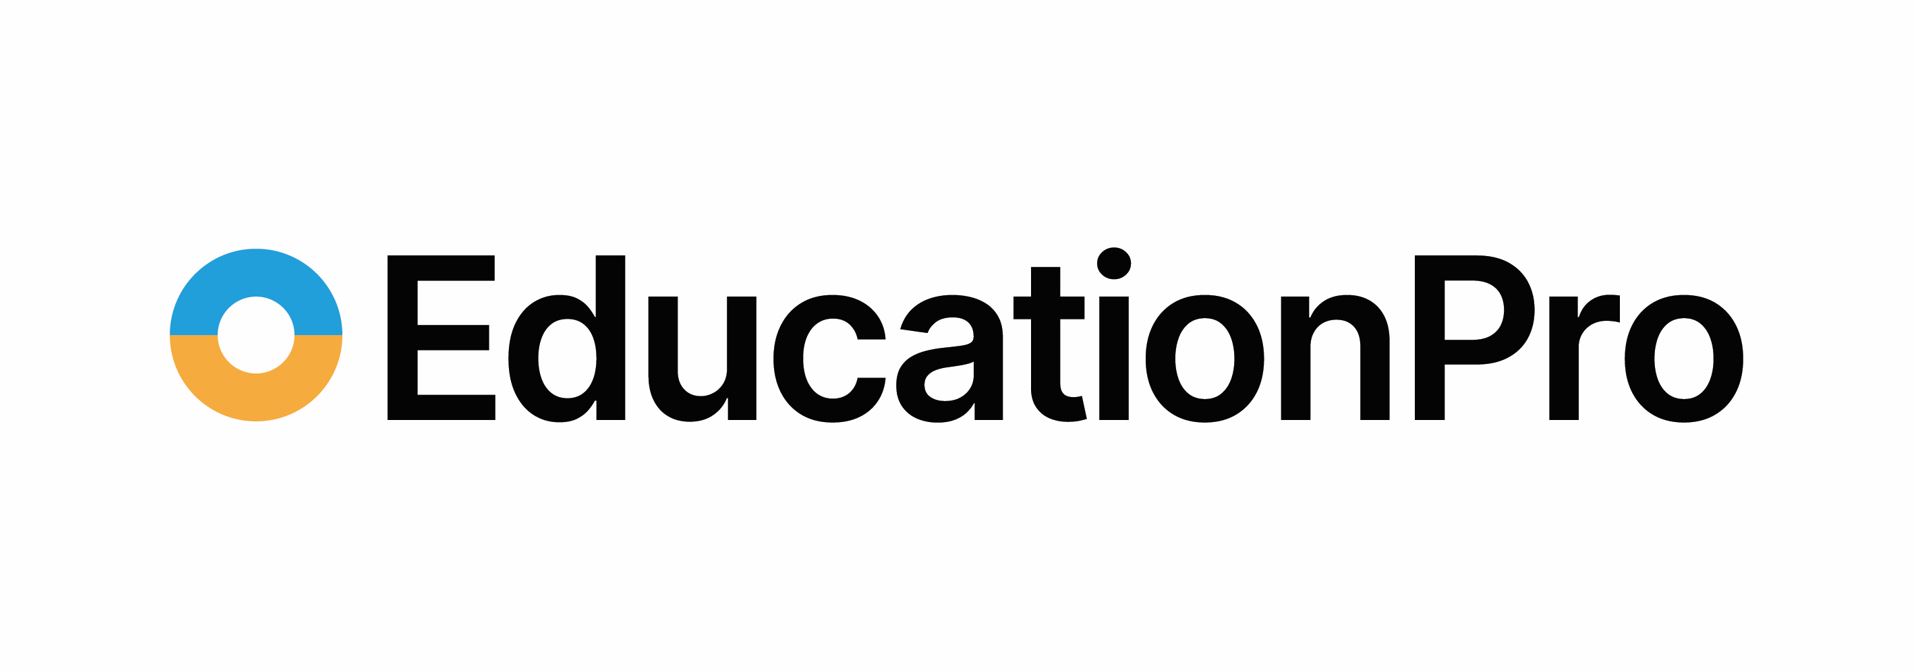 Impero Education Pro